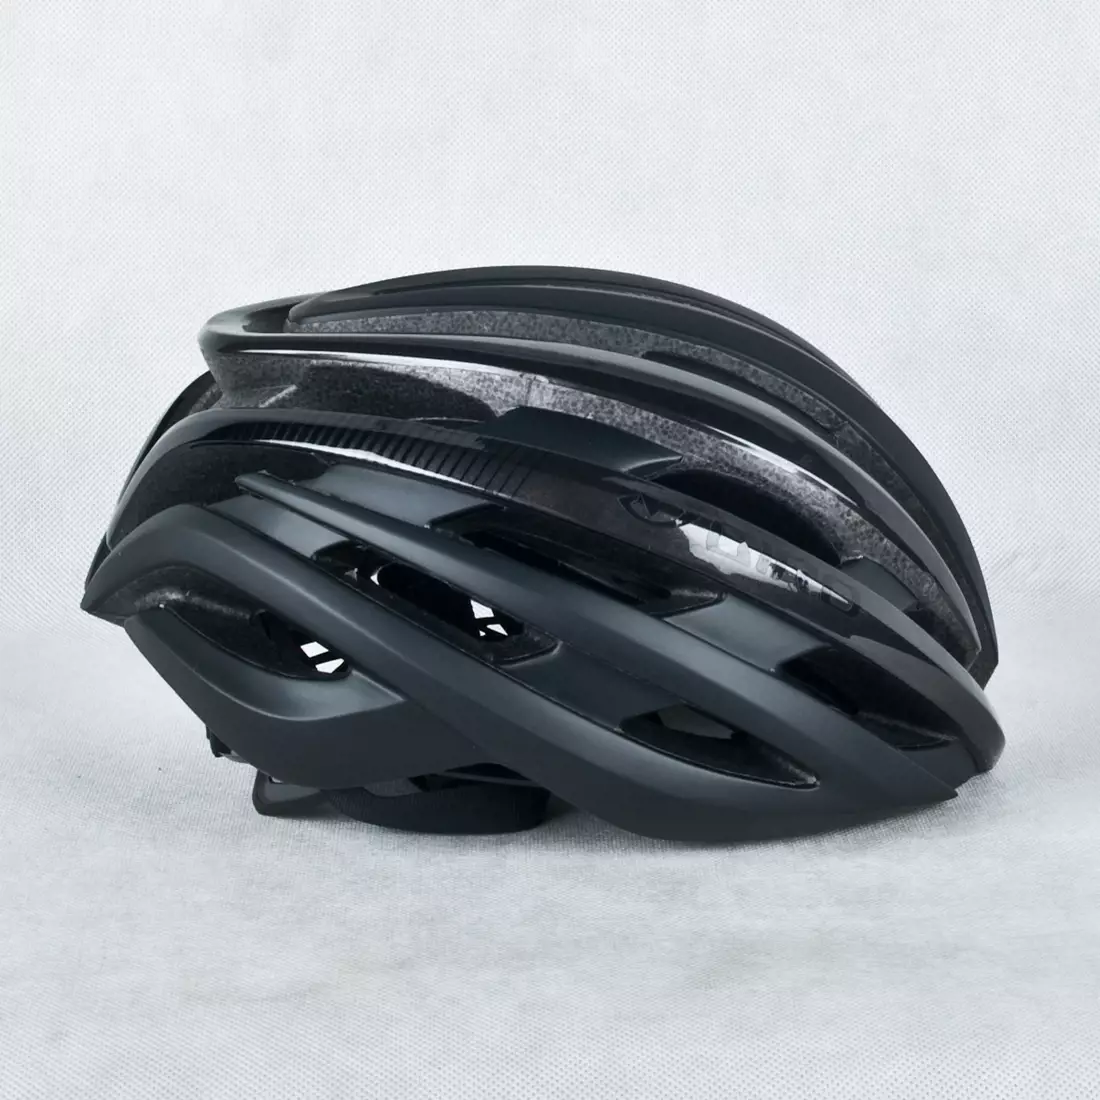 GIRO CINDER MIPS - čierna matná cyklistická prilba